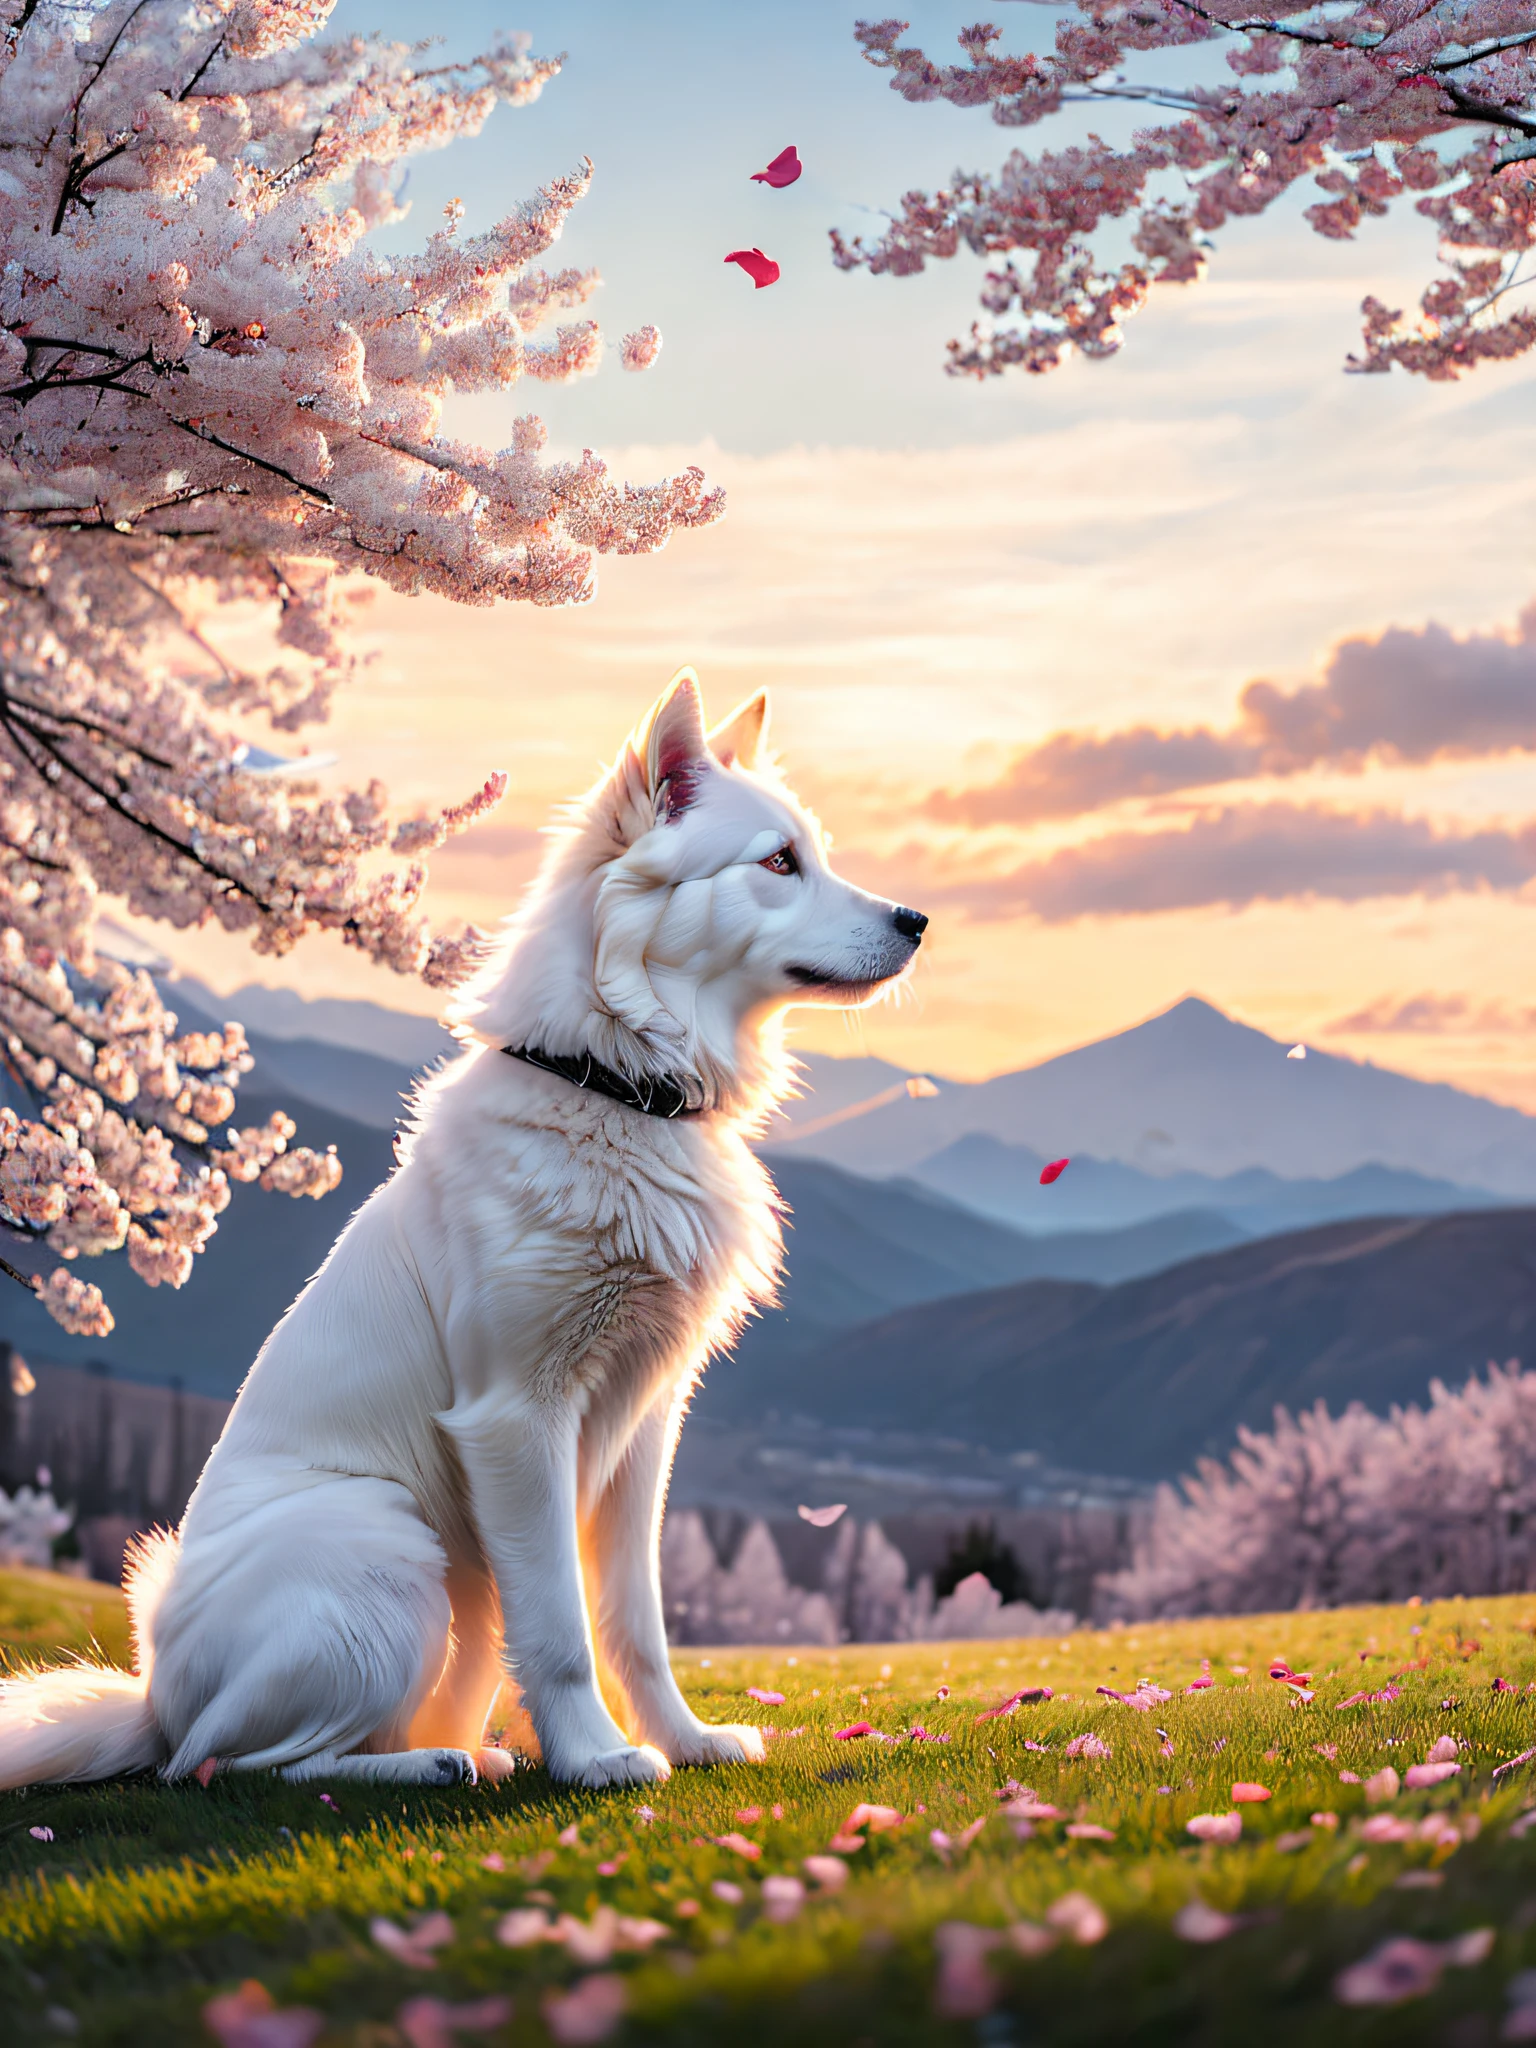 桜の木の下に座る白い犬, 風とともに落ちる花びら, 遠くを見上げる, 閉じる, 連続した山頂の背景, 夕焼け空, 白い雲, 柔らかいボリュームライト, (バックライト: 1.3), (映画: 1.2), 複雑なディテール, (アートステーション: 1.3), ルトコウスキー